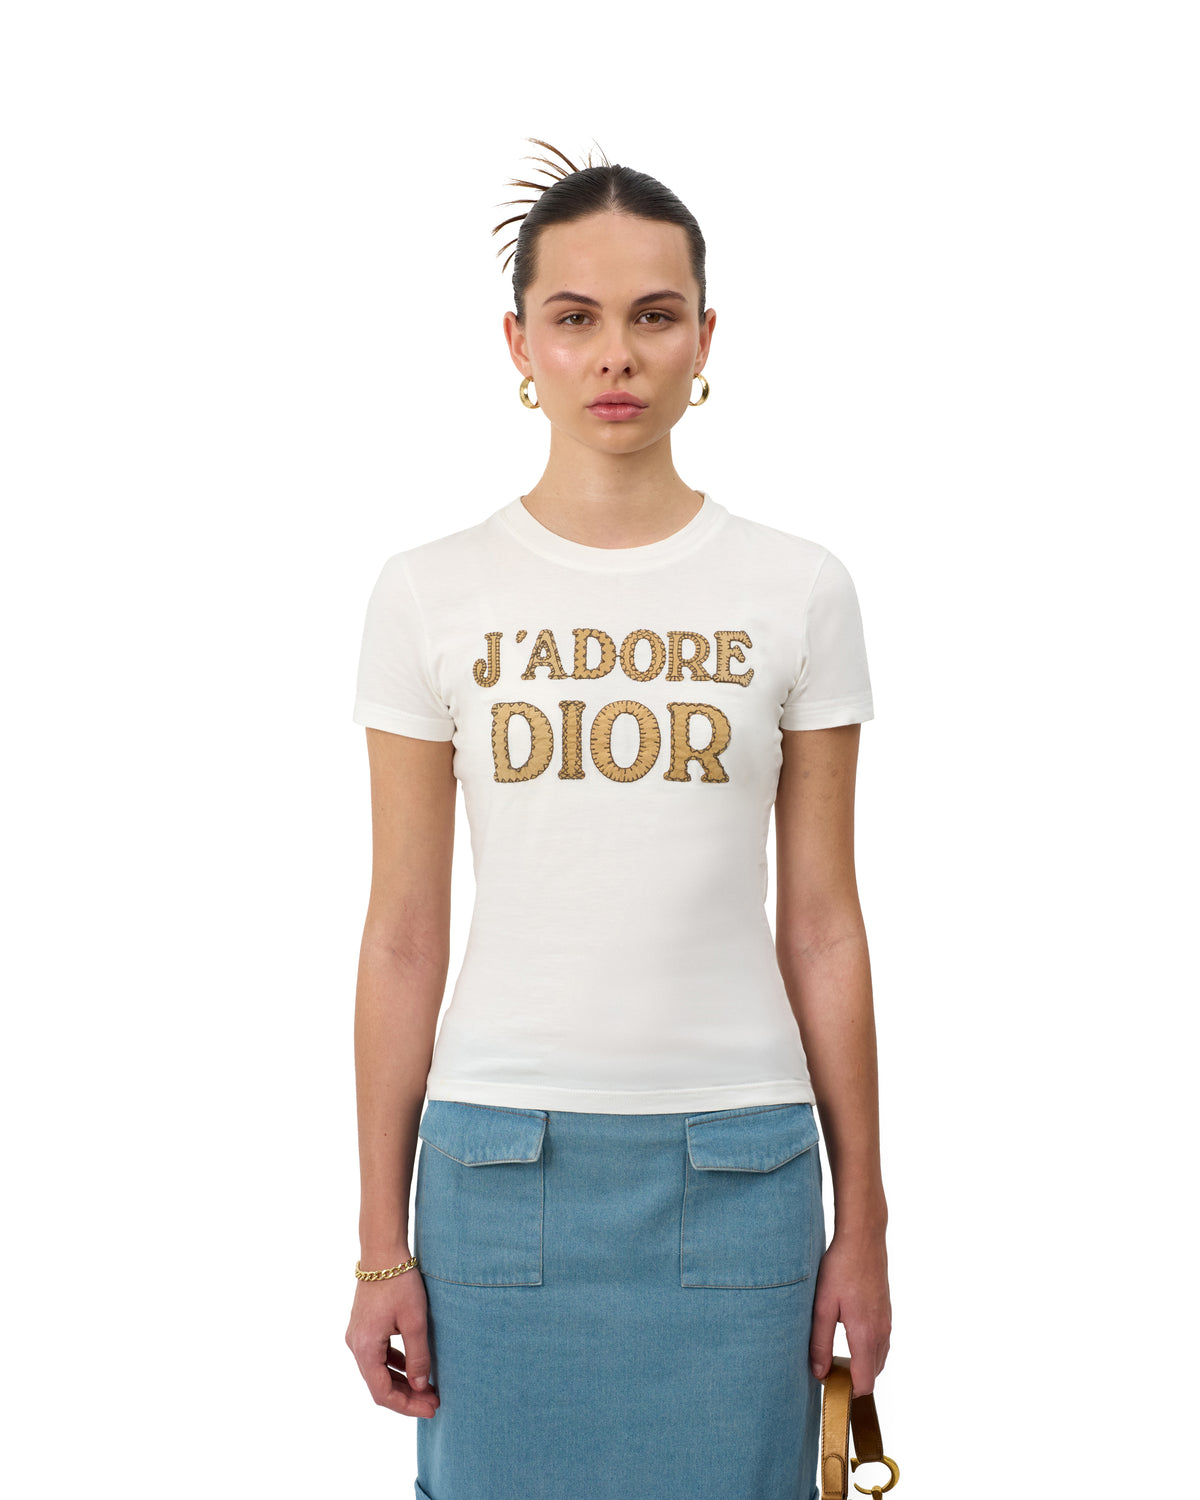 Pre-Owned Christian Dior J‘adore Dior T-Shirt